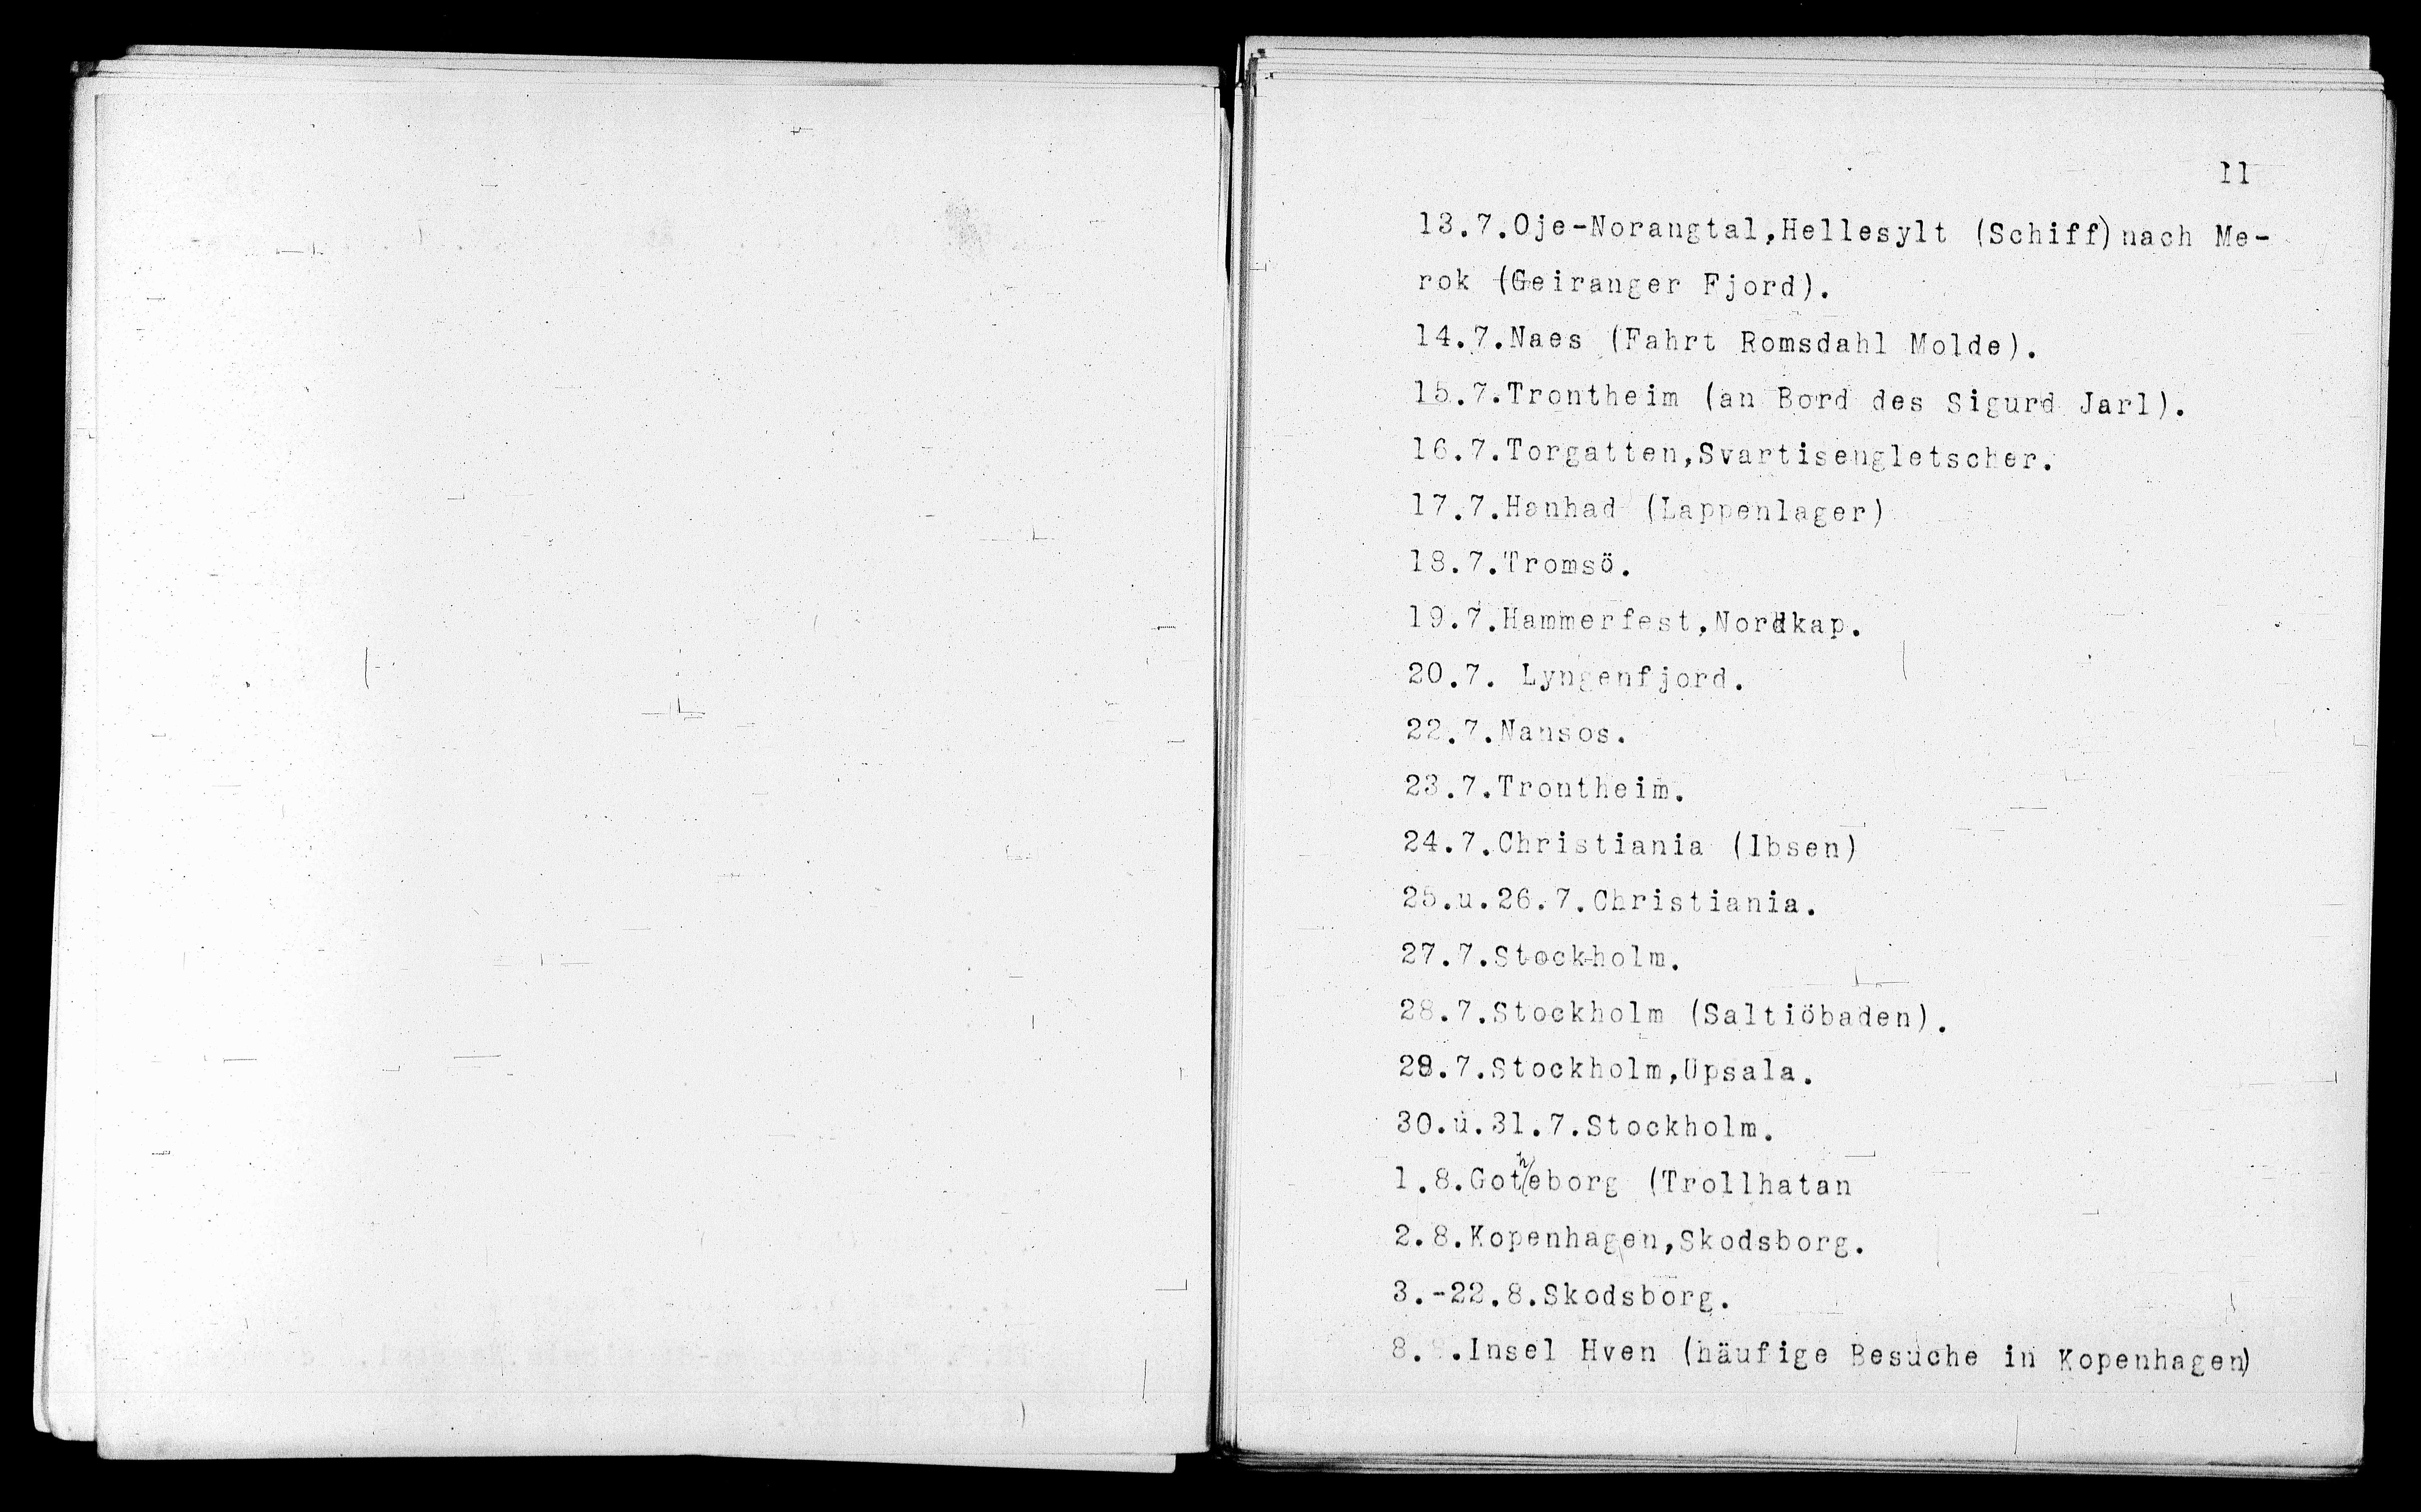 Vorschaubild für Verzeichnis unternommener Reisen 1867-1927, Seite 11